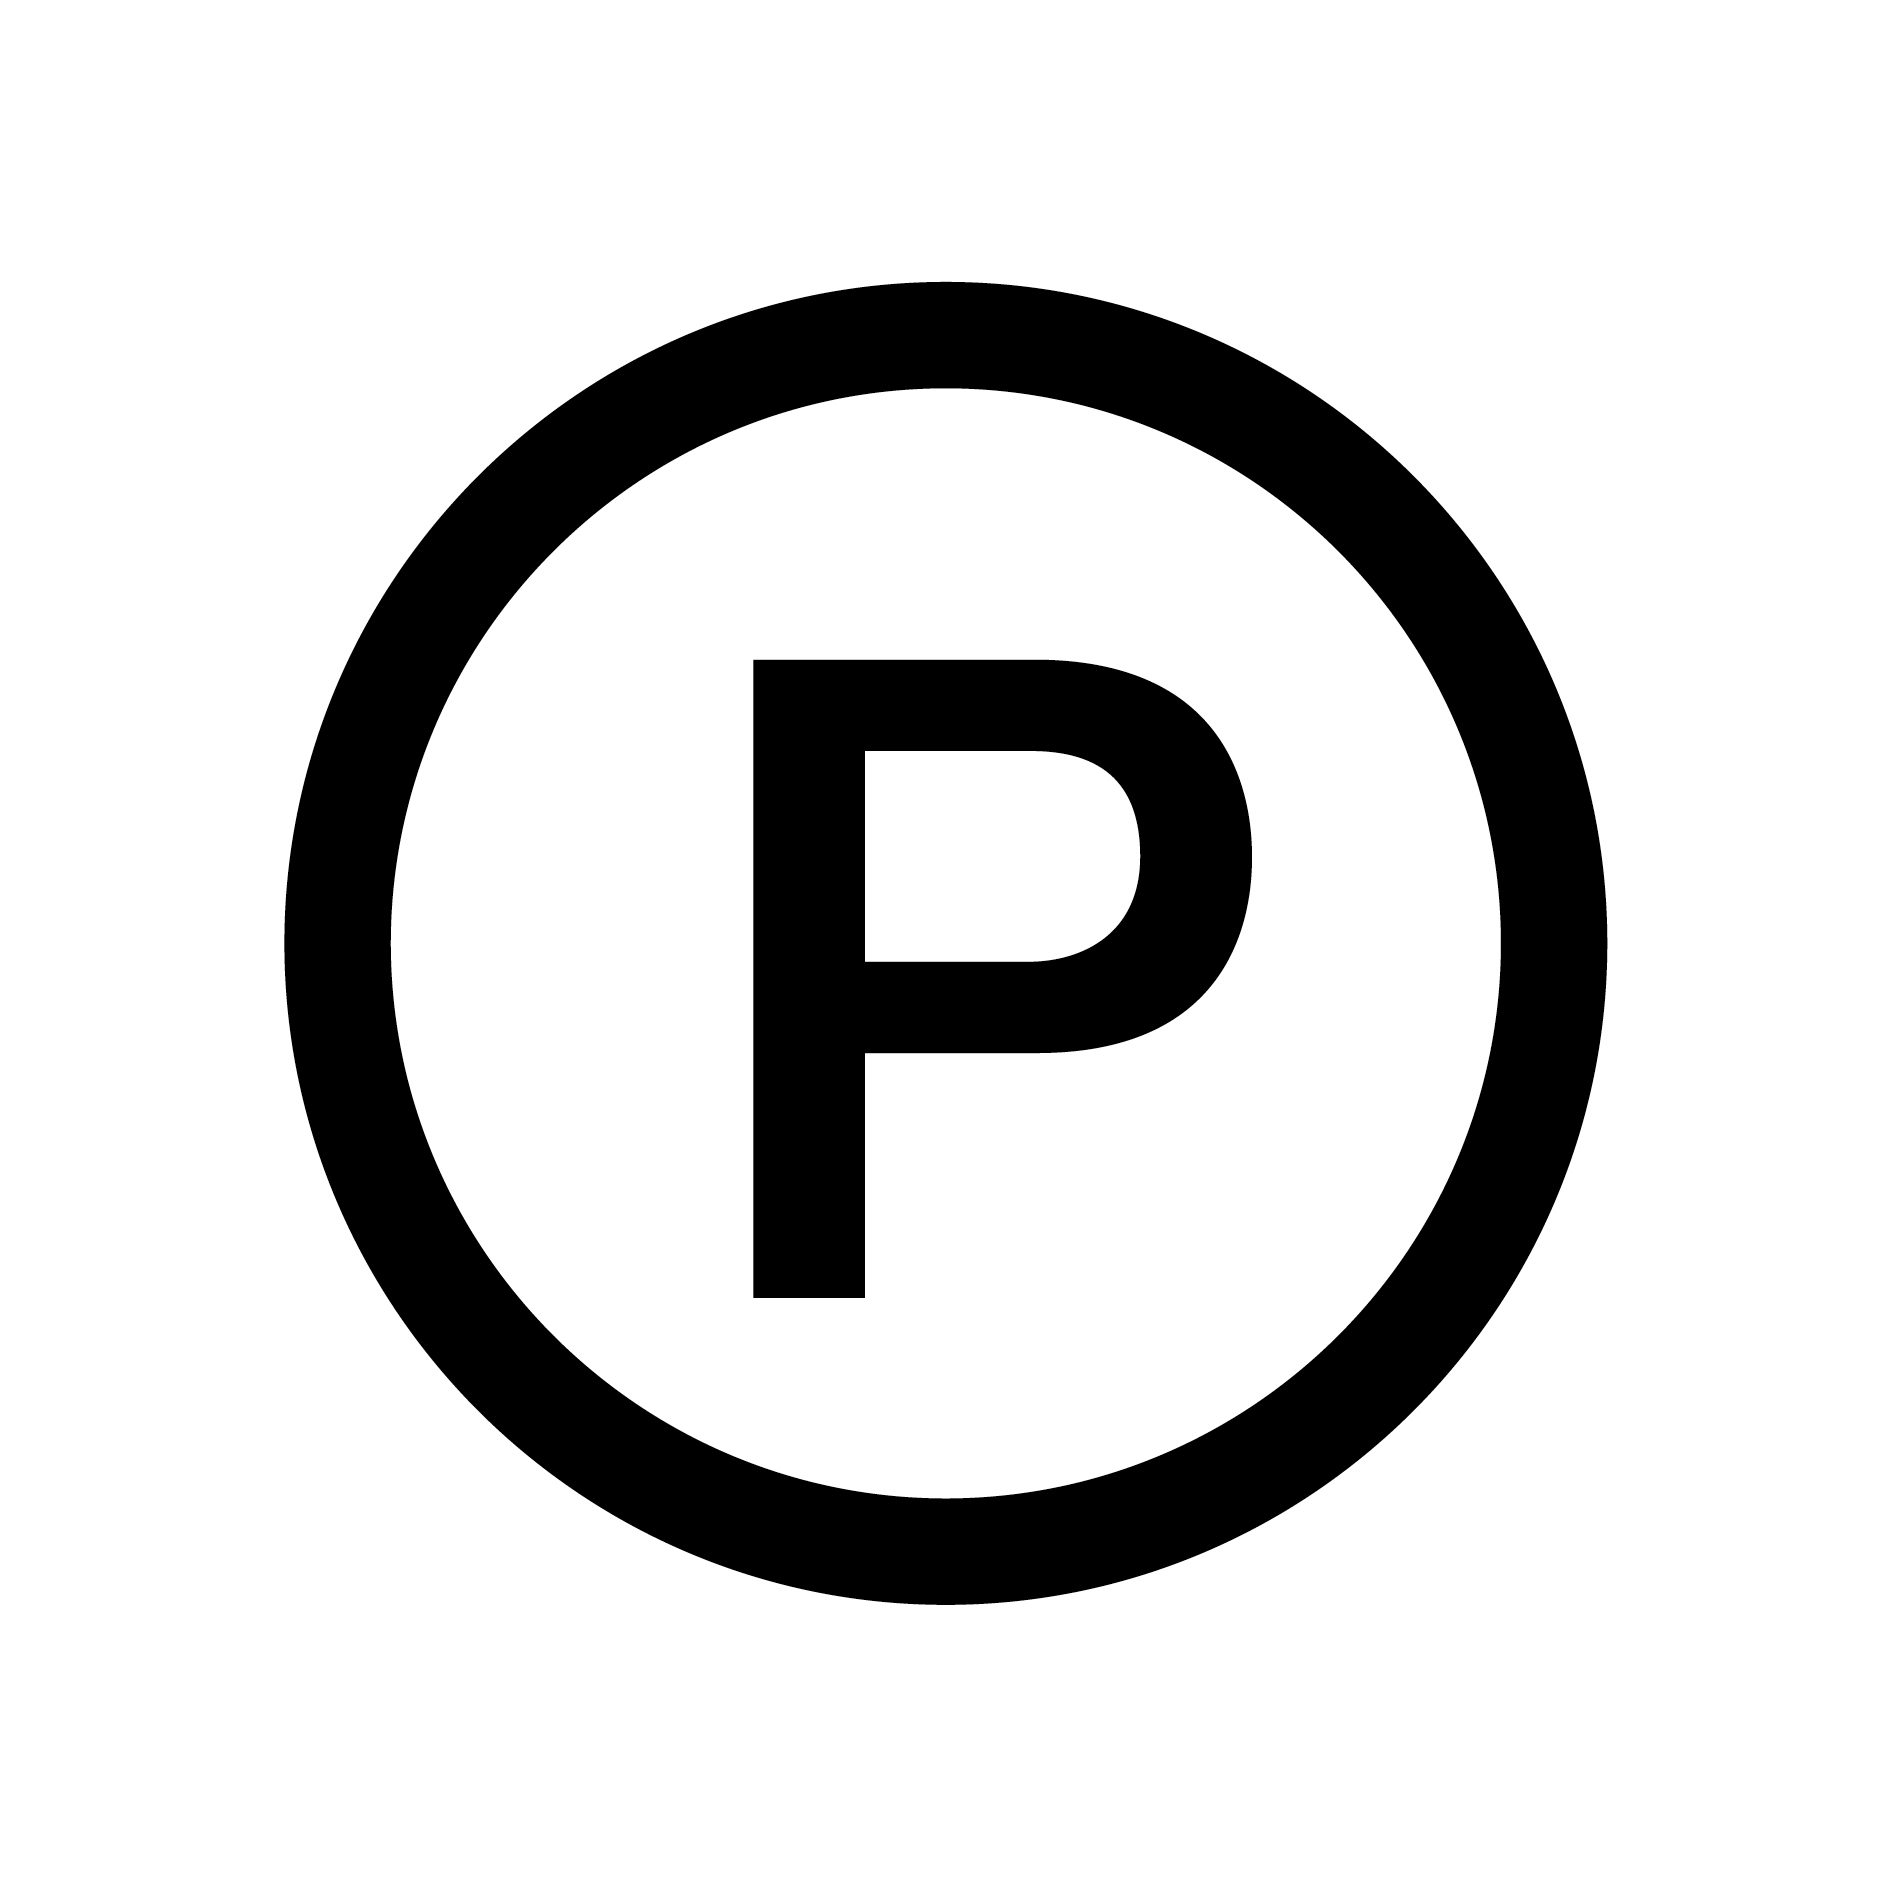 Symbole d'entretien P